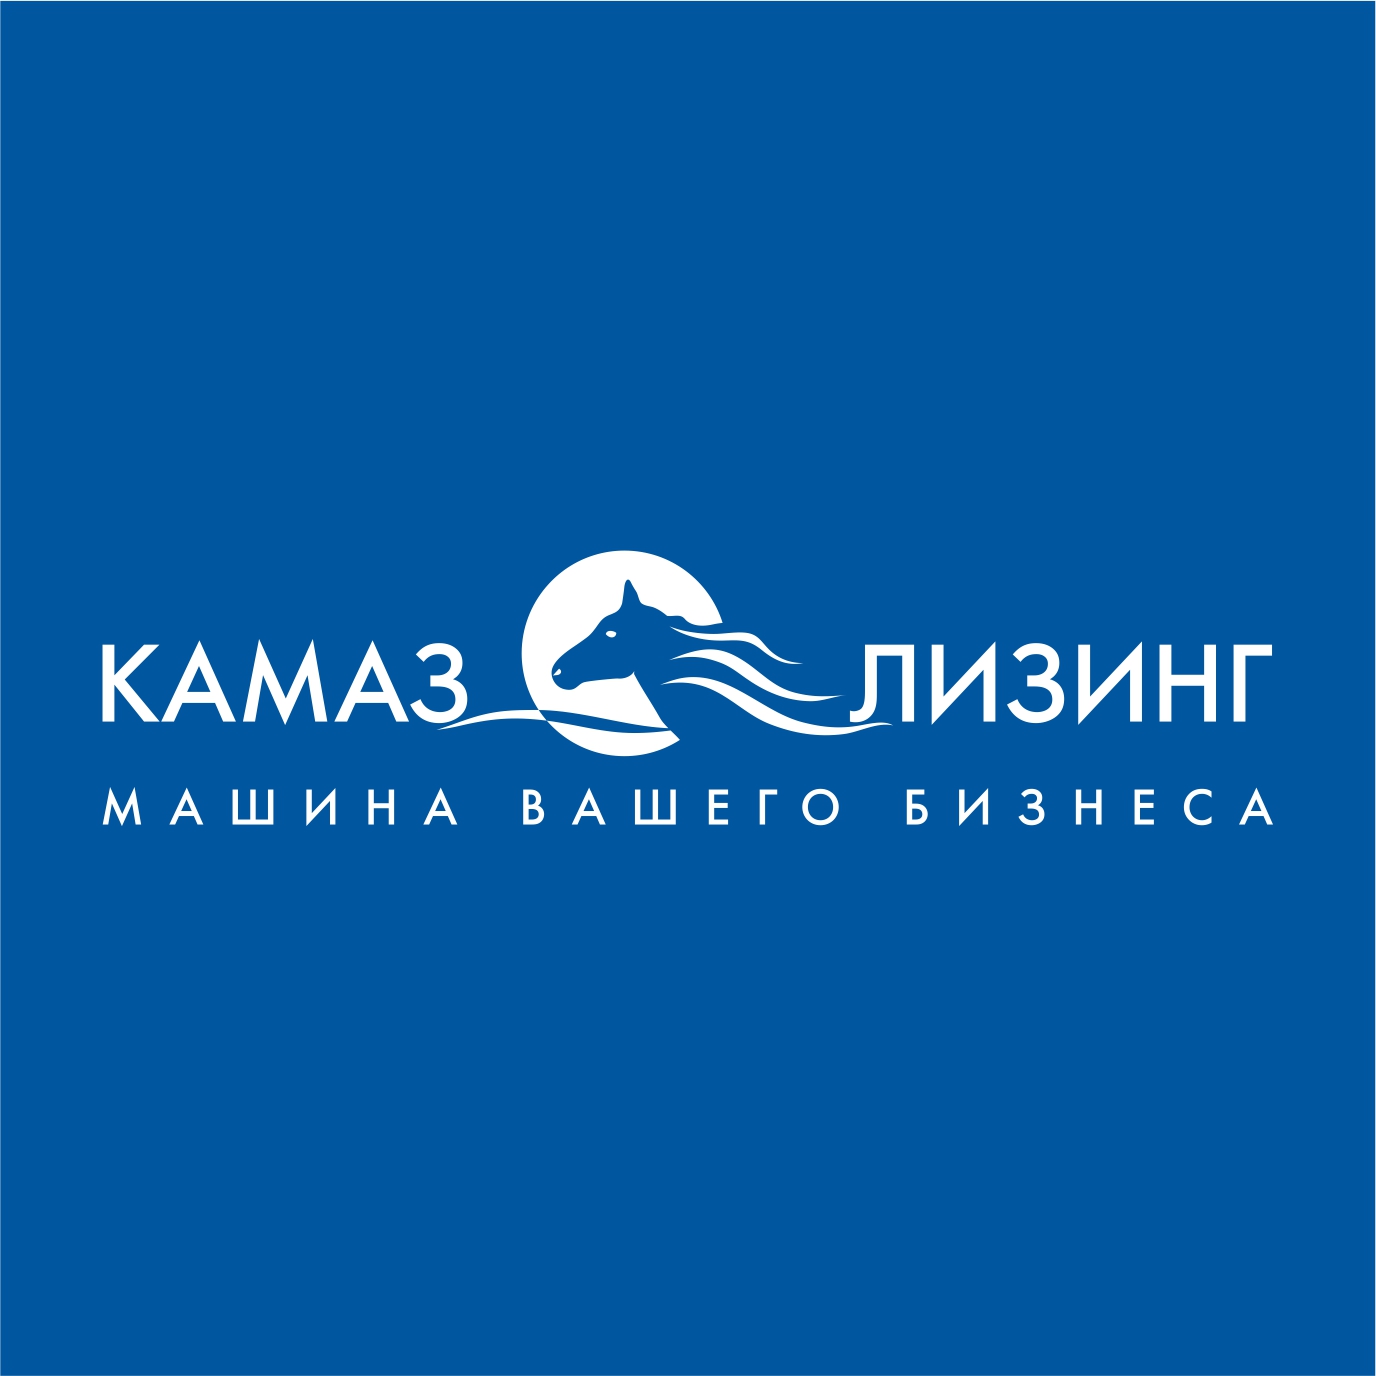 Логотип на синем фоне